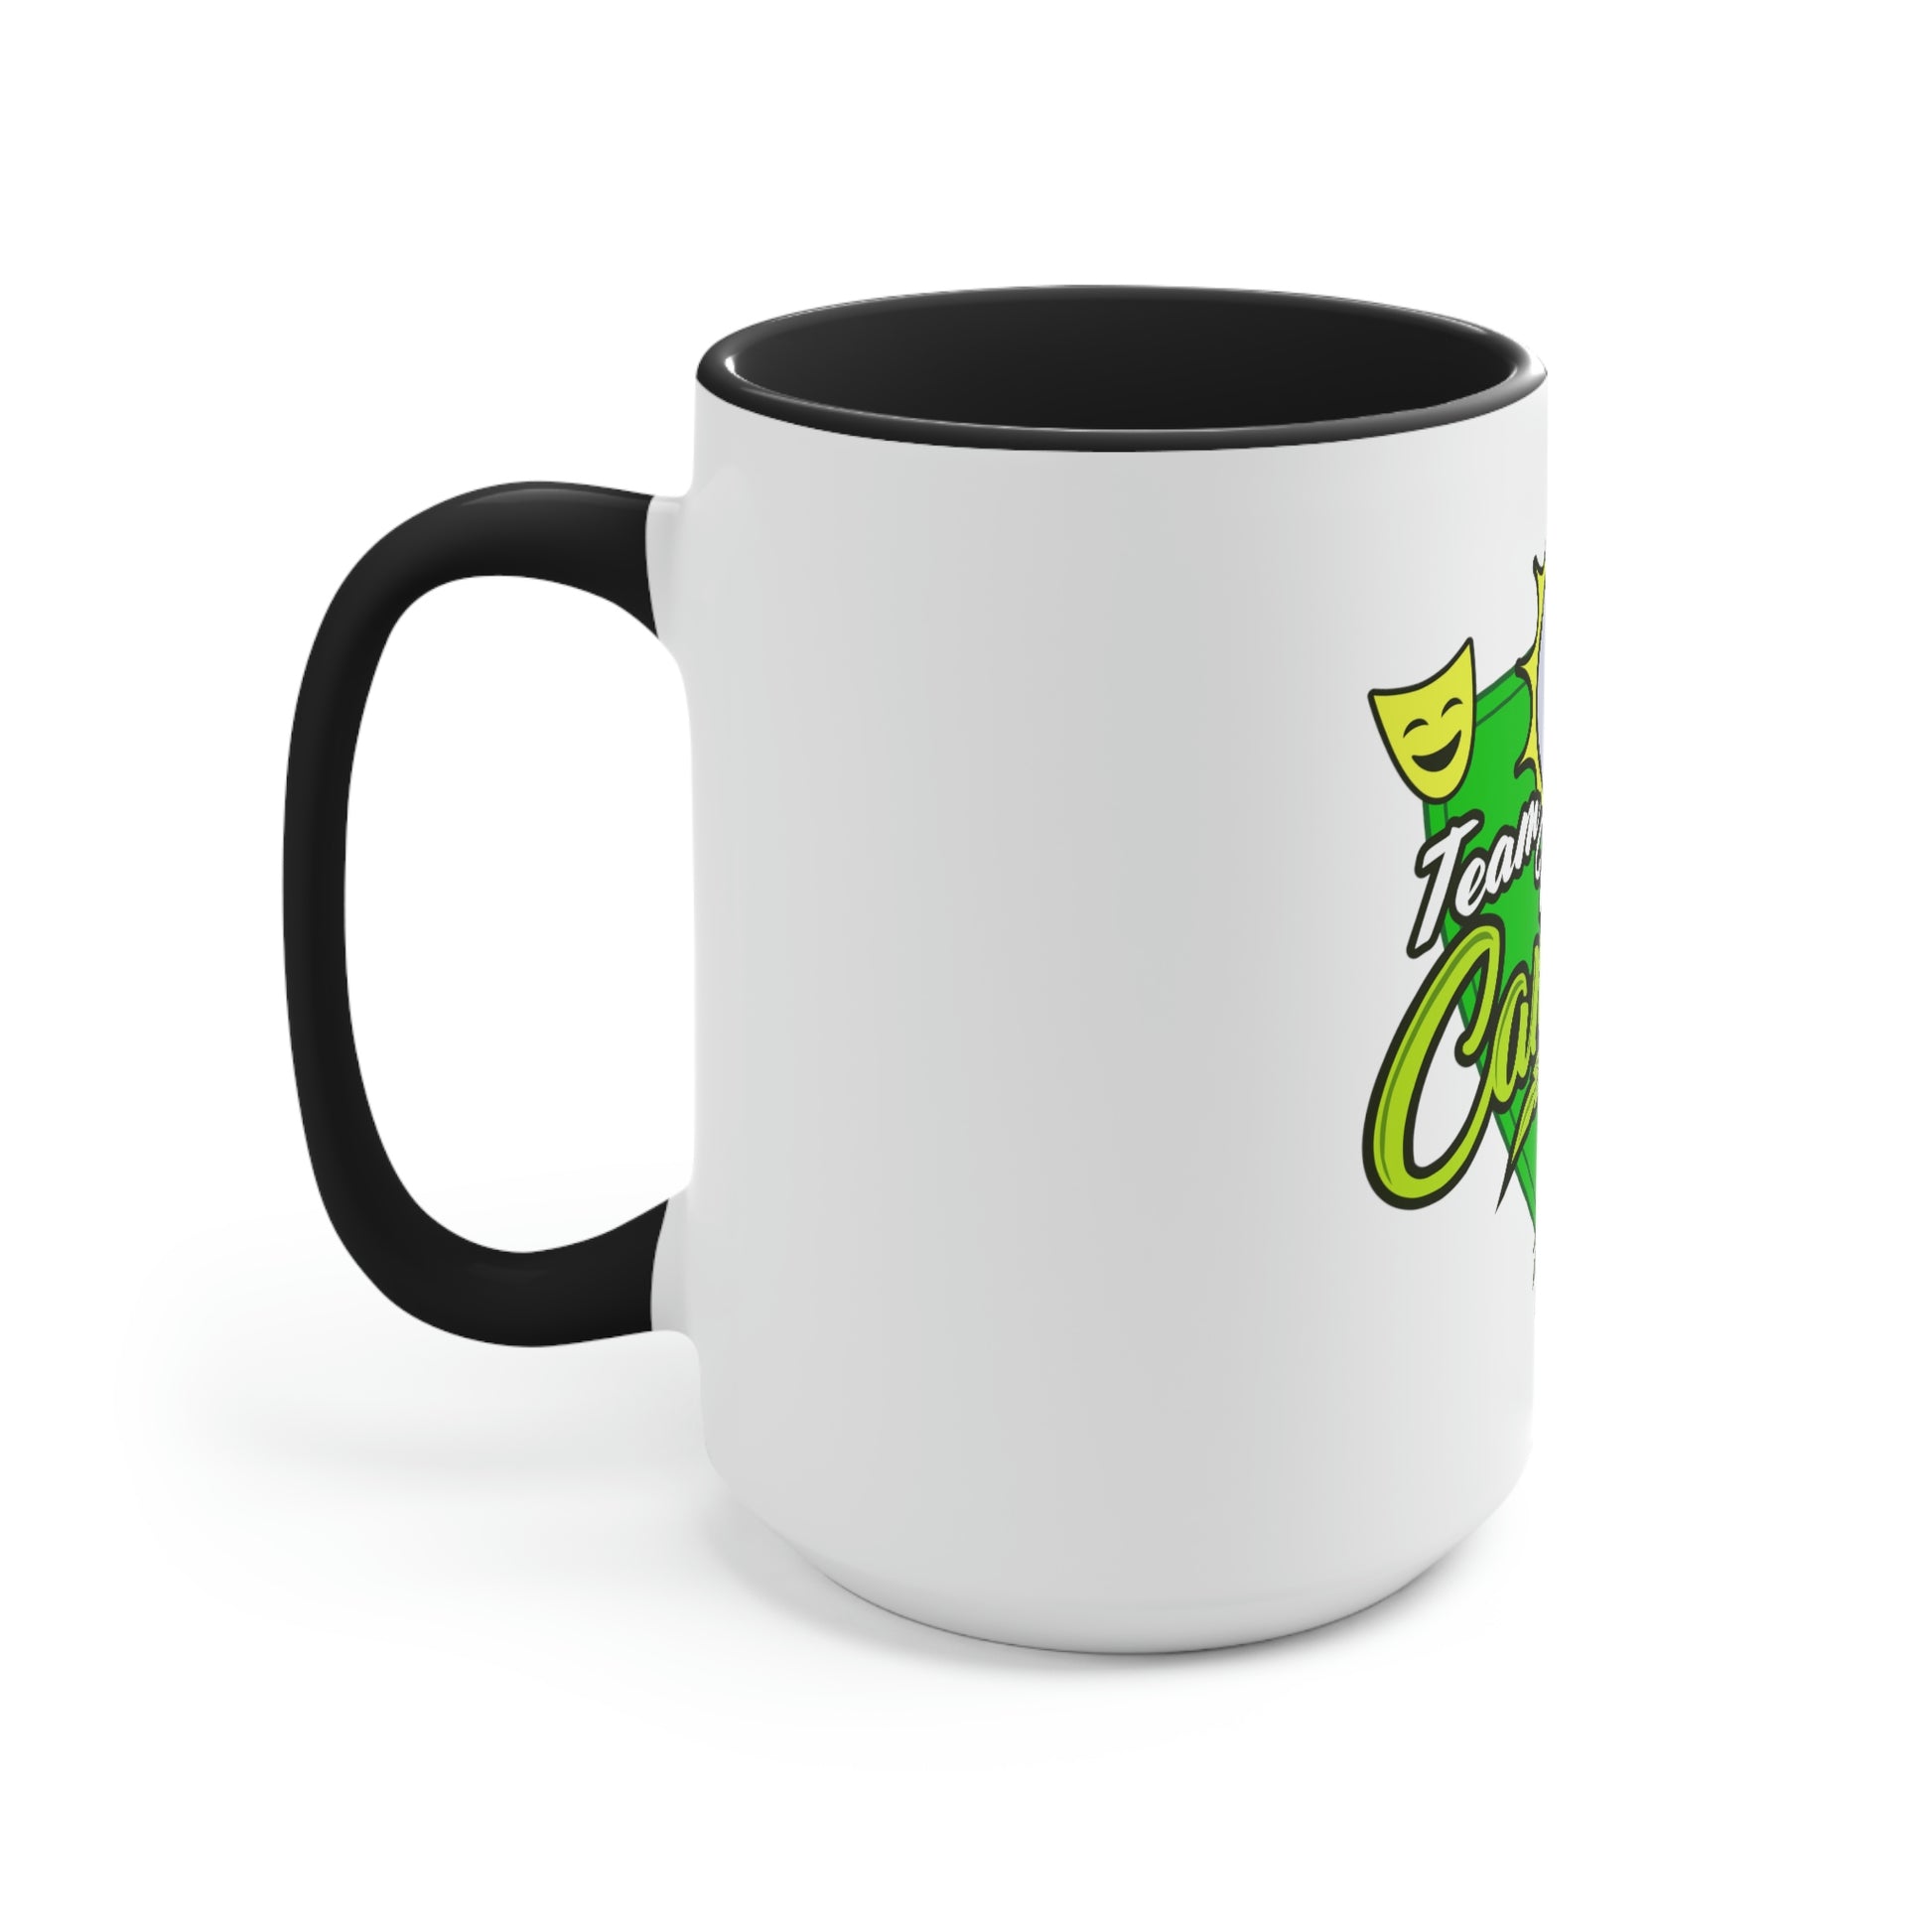 a Team Hybrid Cannabis Mug with a green logo on it.